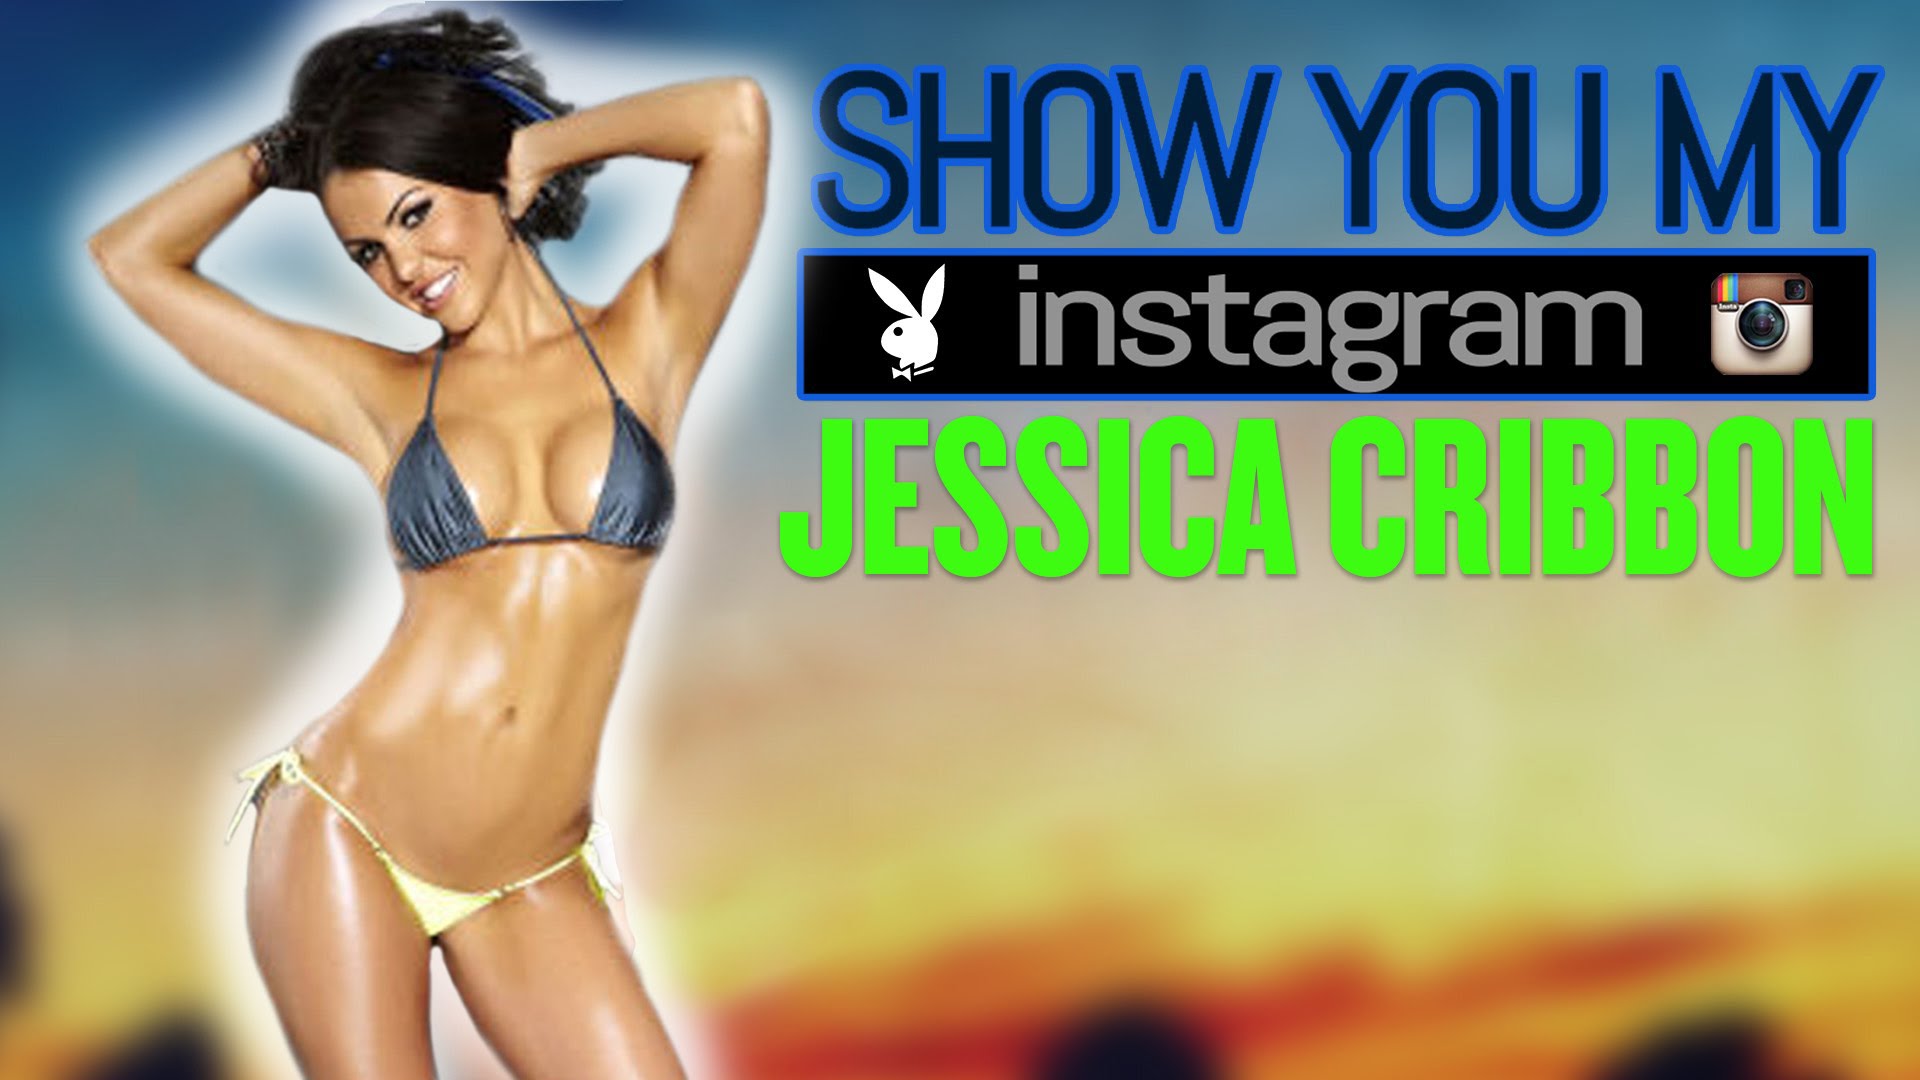 Jessica Cribbon apresentando o seu instagram